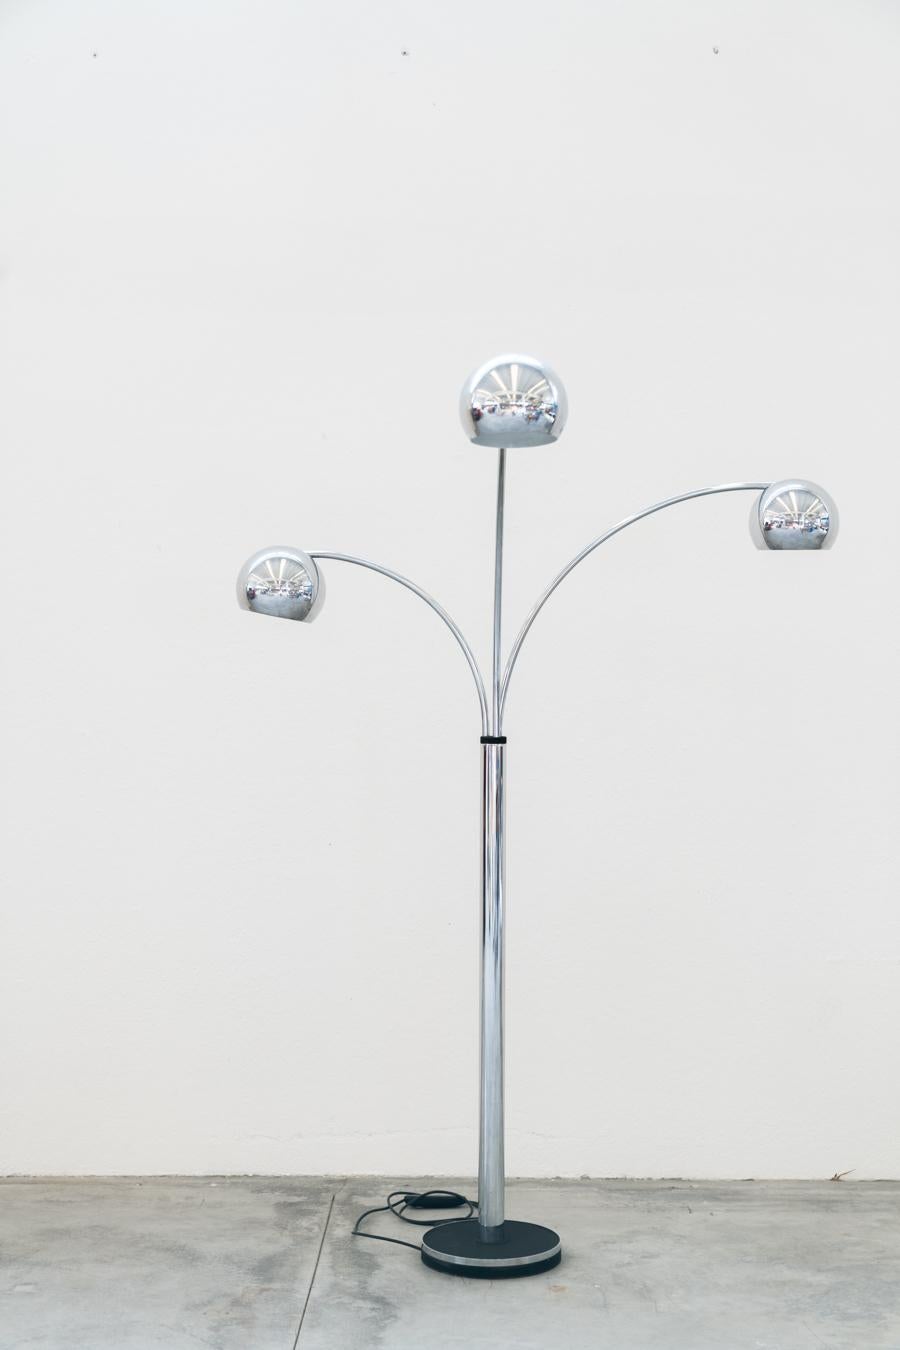 Reggiani 1970 lampadaire à 3 bras
Lampadaire, lampadaire à 3 lumières en laiton avec base en fonte peinte. Produite par Reggiani dans les années 1970, originale à l'époque, elle se compose d'une base en fer, d'un tube central, de 3 bras et de